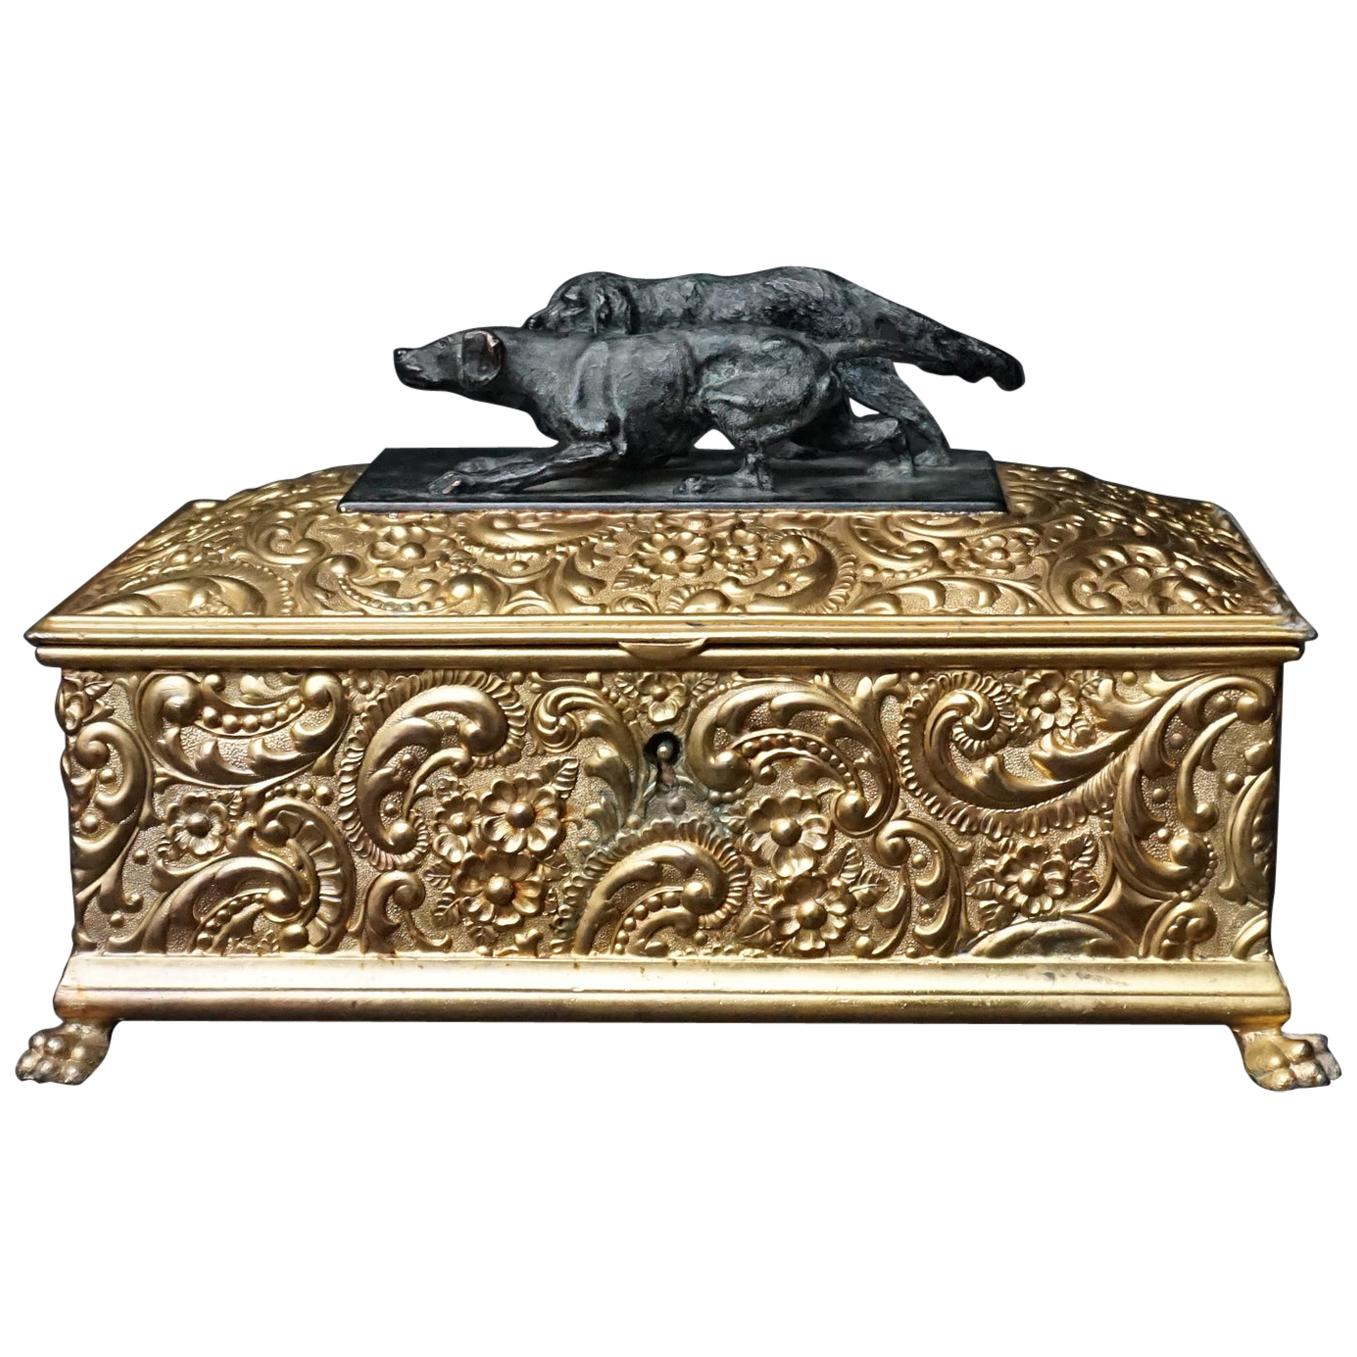 Meriden Wilcox vergoldeter Silberblech Humidor mit Bronze- Jagdhunden aus dem 19. Jahrhundert